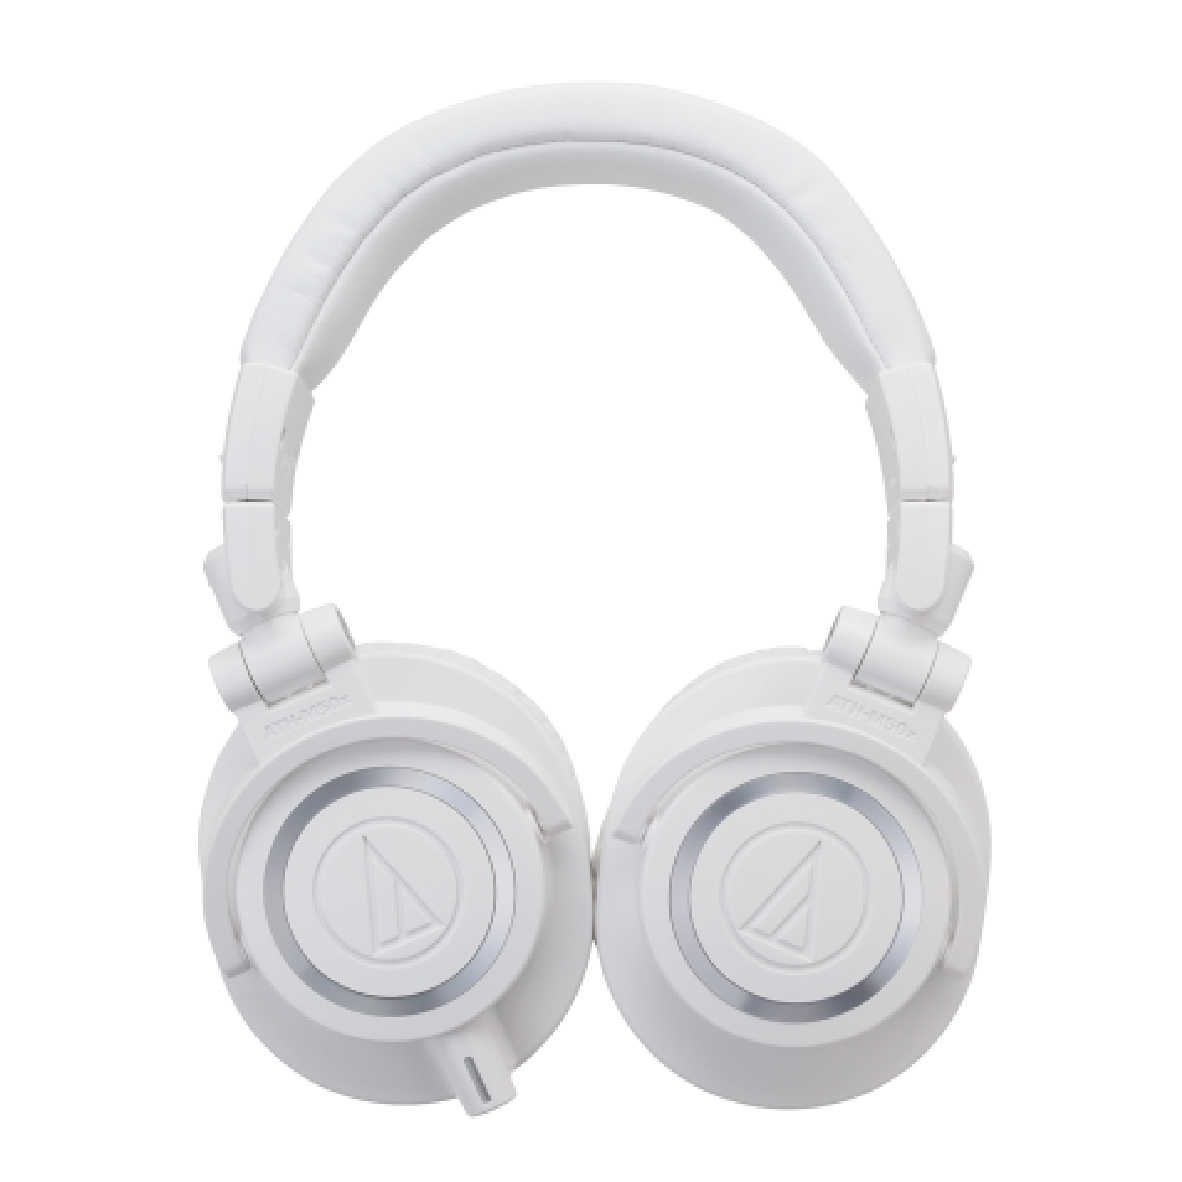 鐵三角 ATH-M50X 專業用 監聽 耳罩式 耳機 白色  | My Ear 耳機專門店